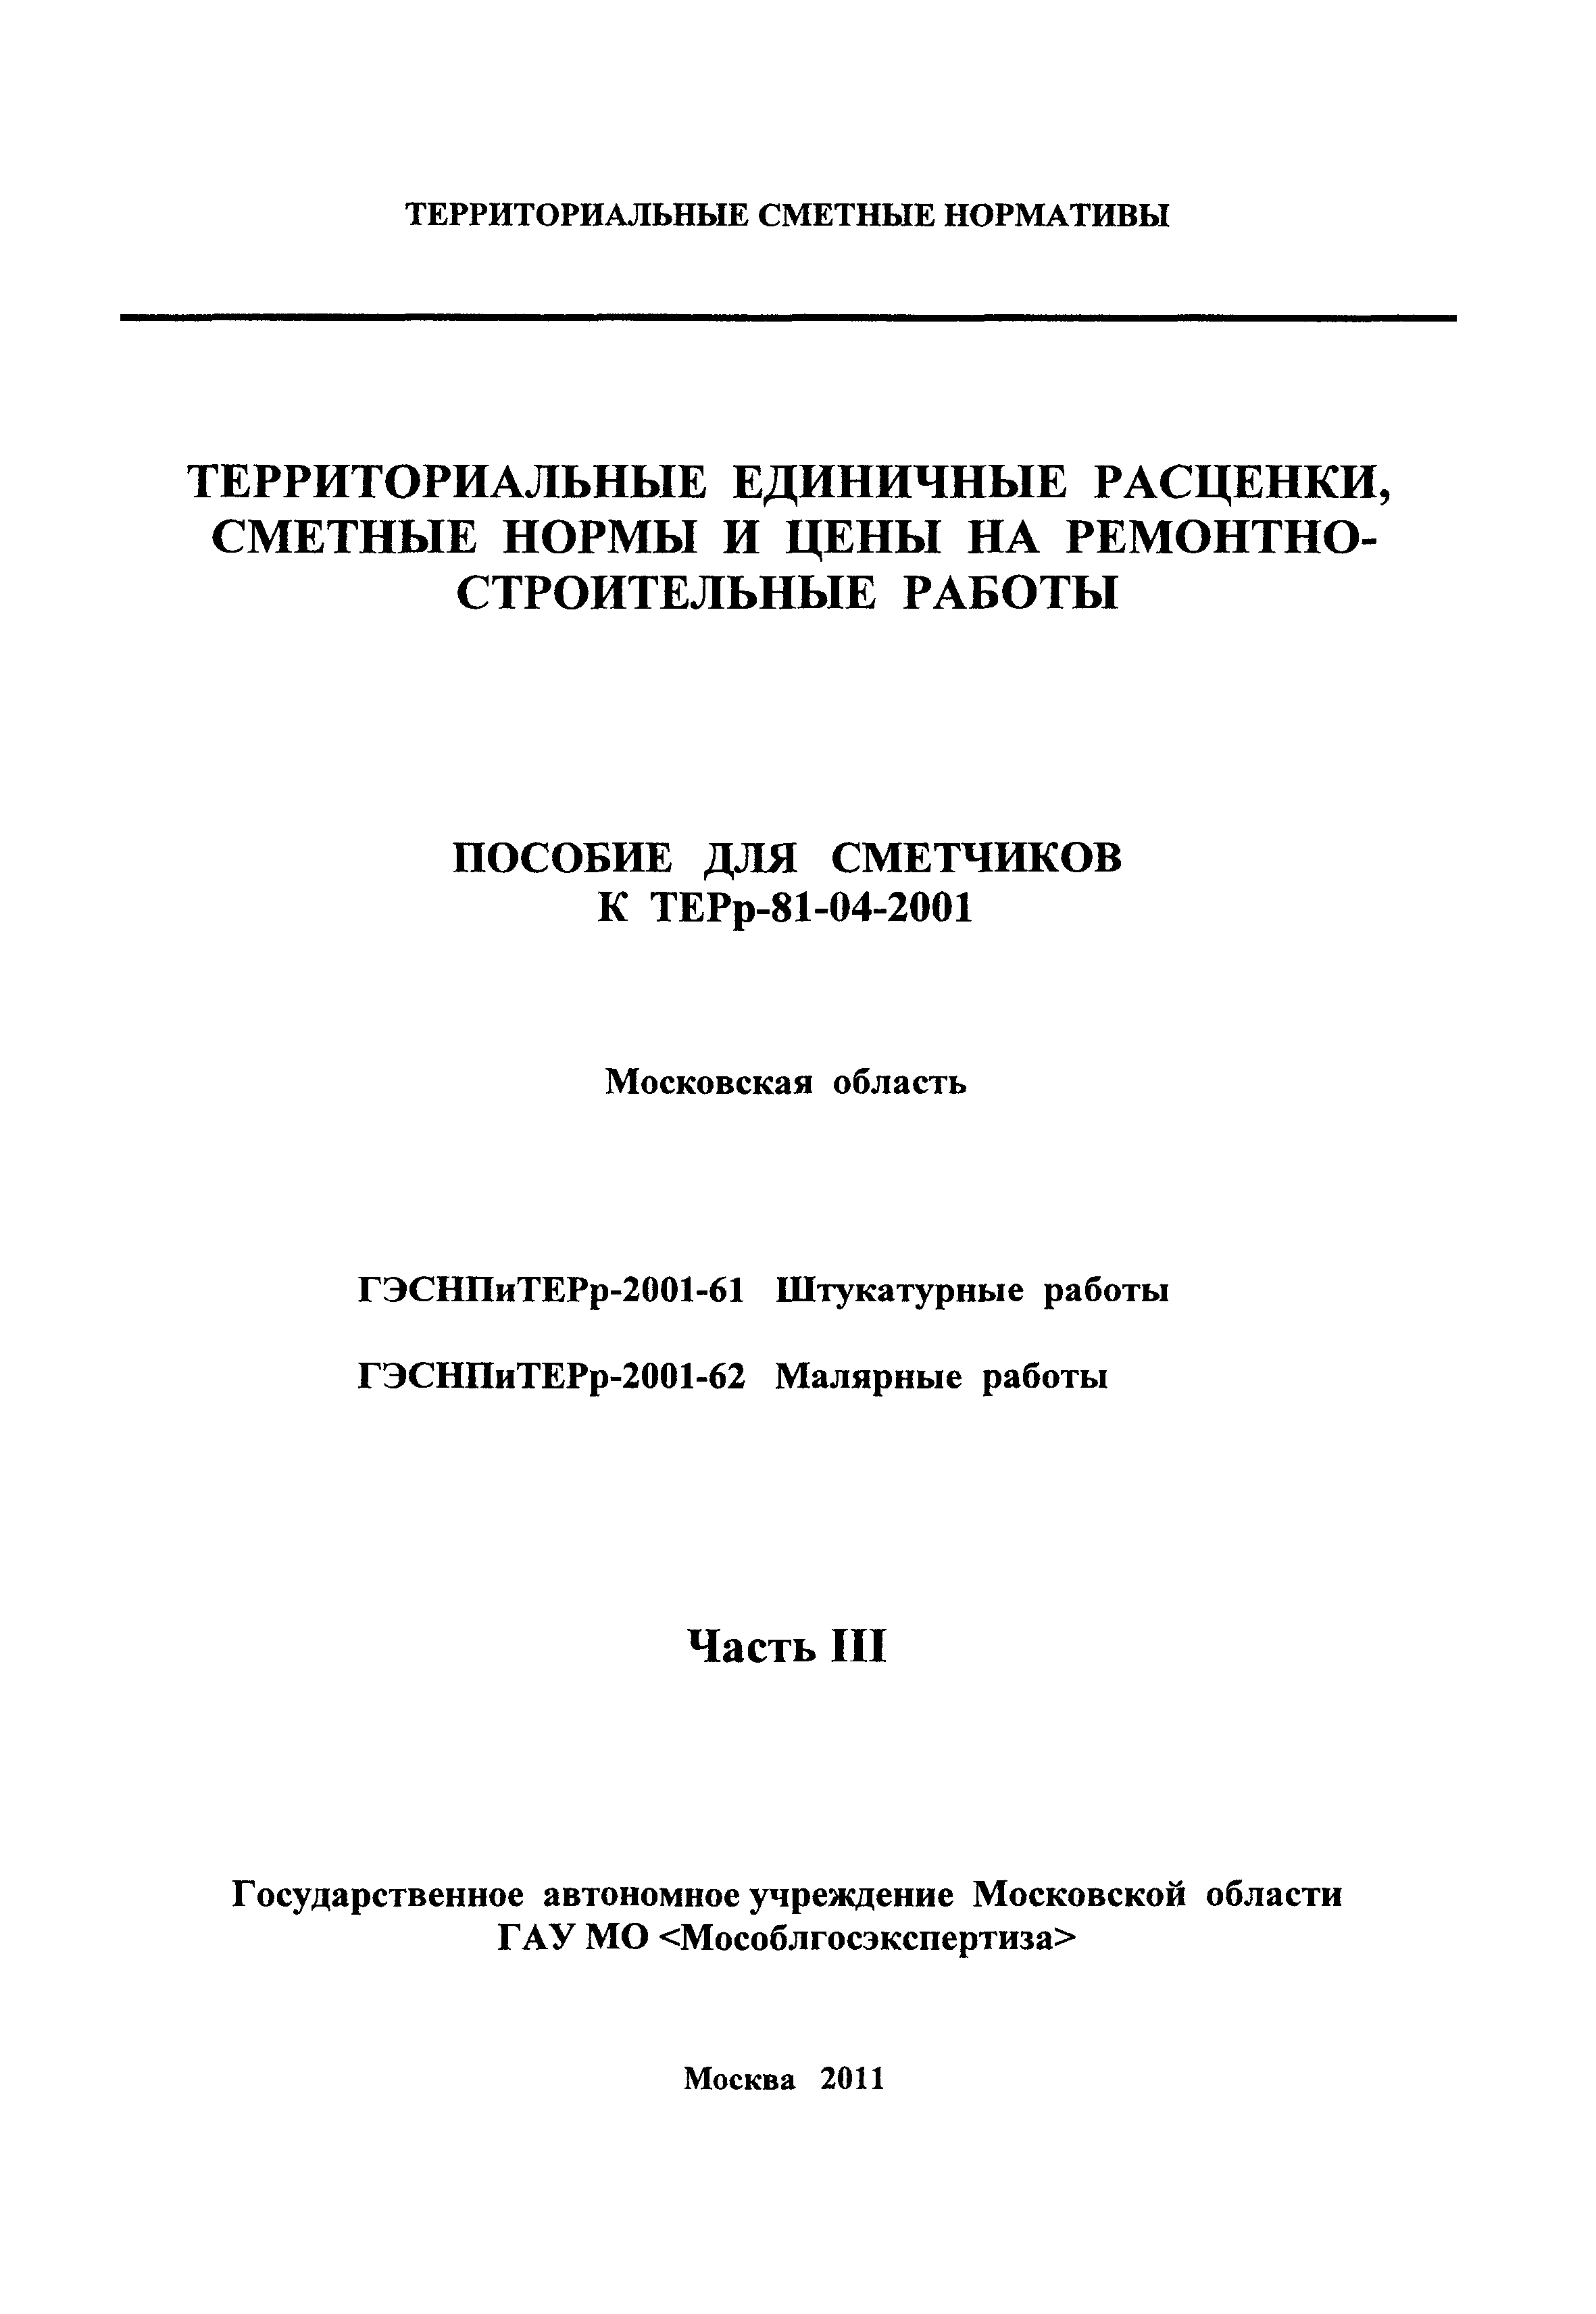 ГЭСНПиТЕРр 2001-61 Московской области